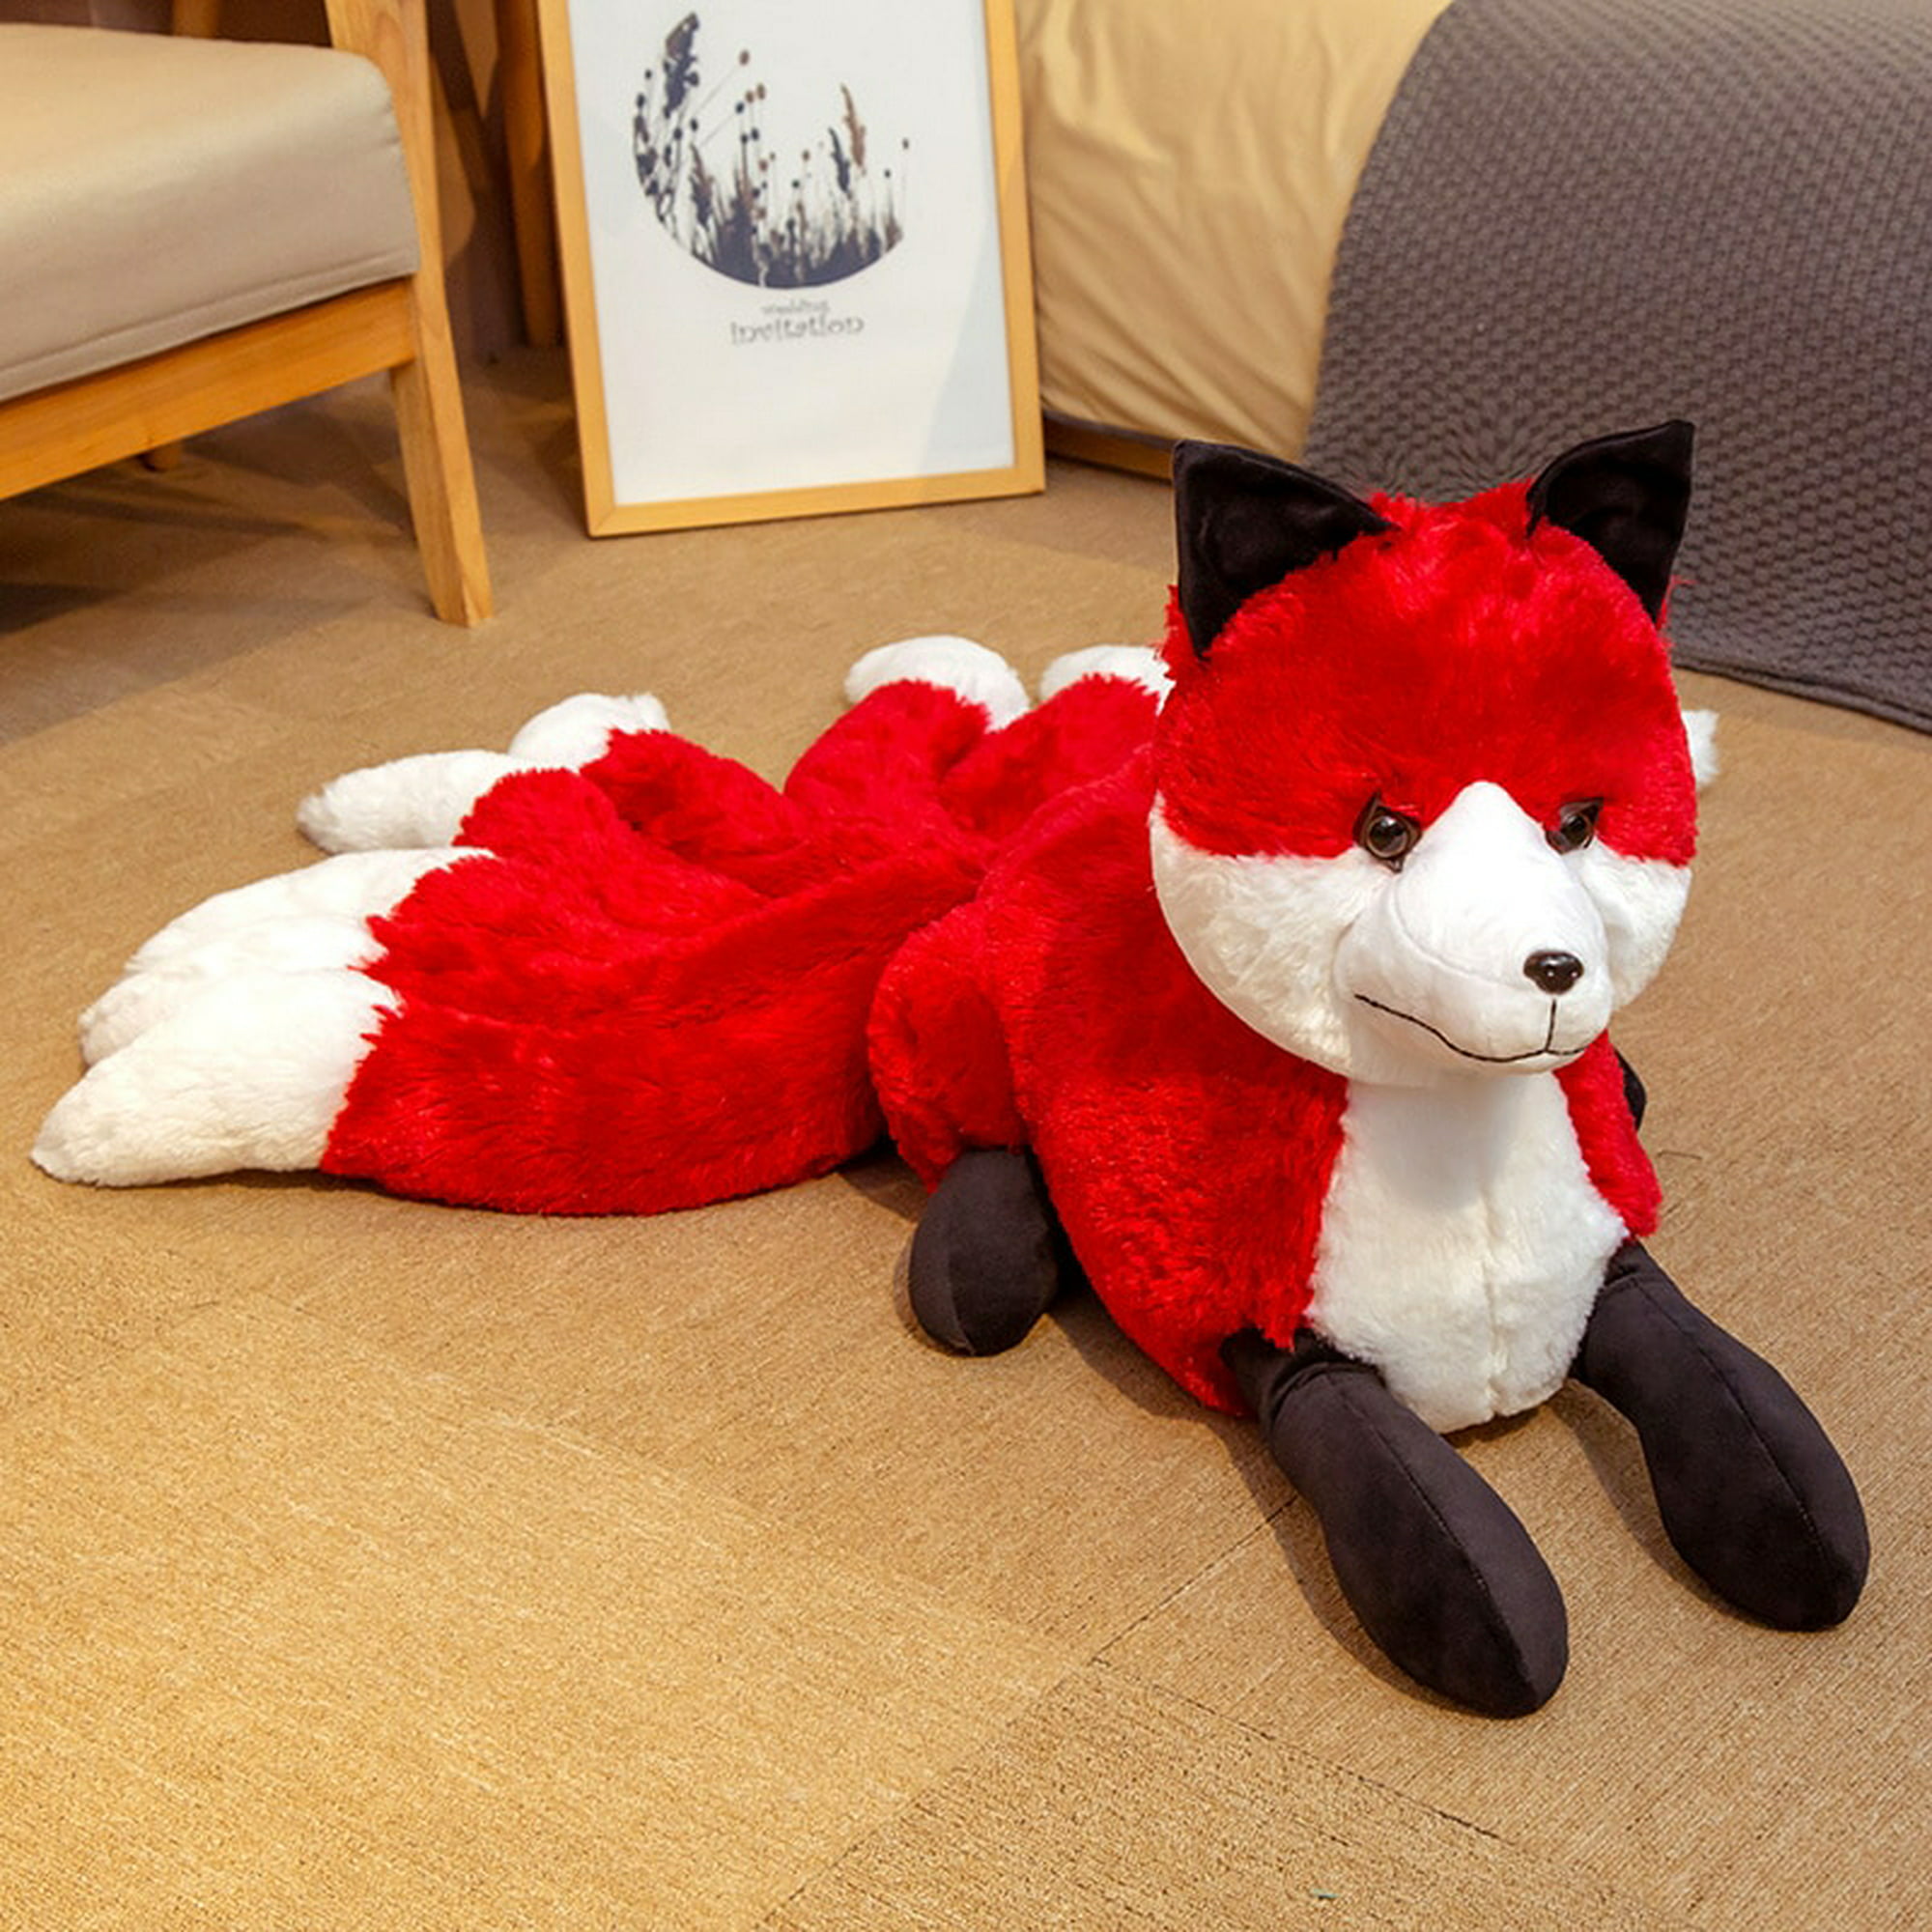 Figura de peluche de zorro de nueve colas, de nueve colas muñeco de peluche,  rojo, Kitsune, regalo creativo, zorro realista, juguete de decoración  Fivean unisex